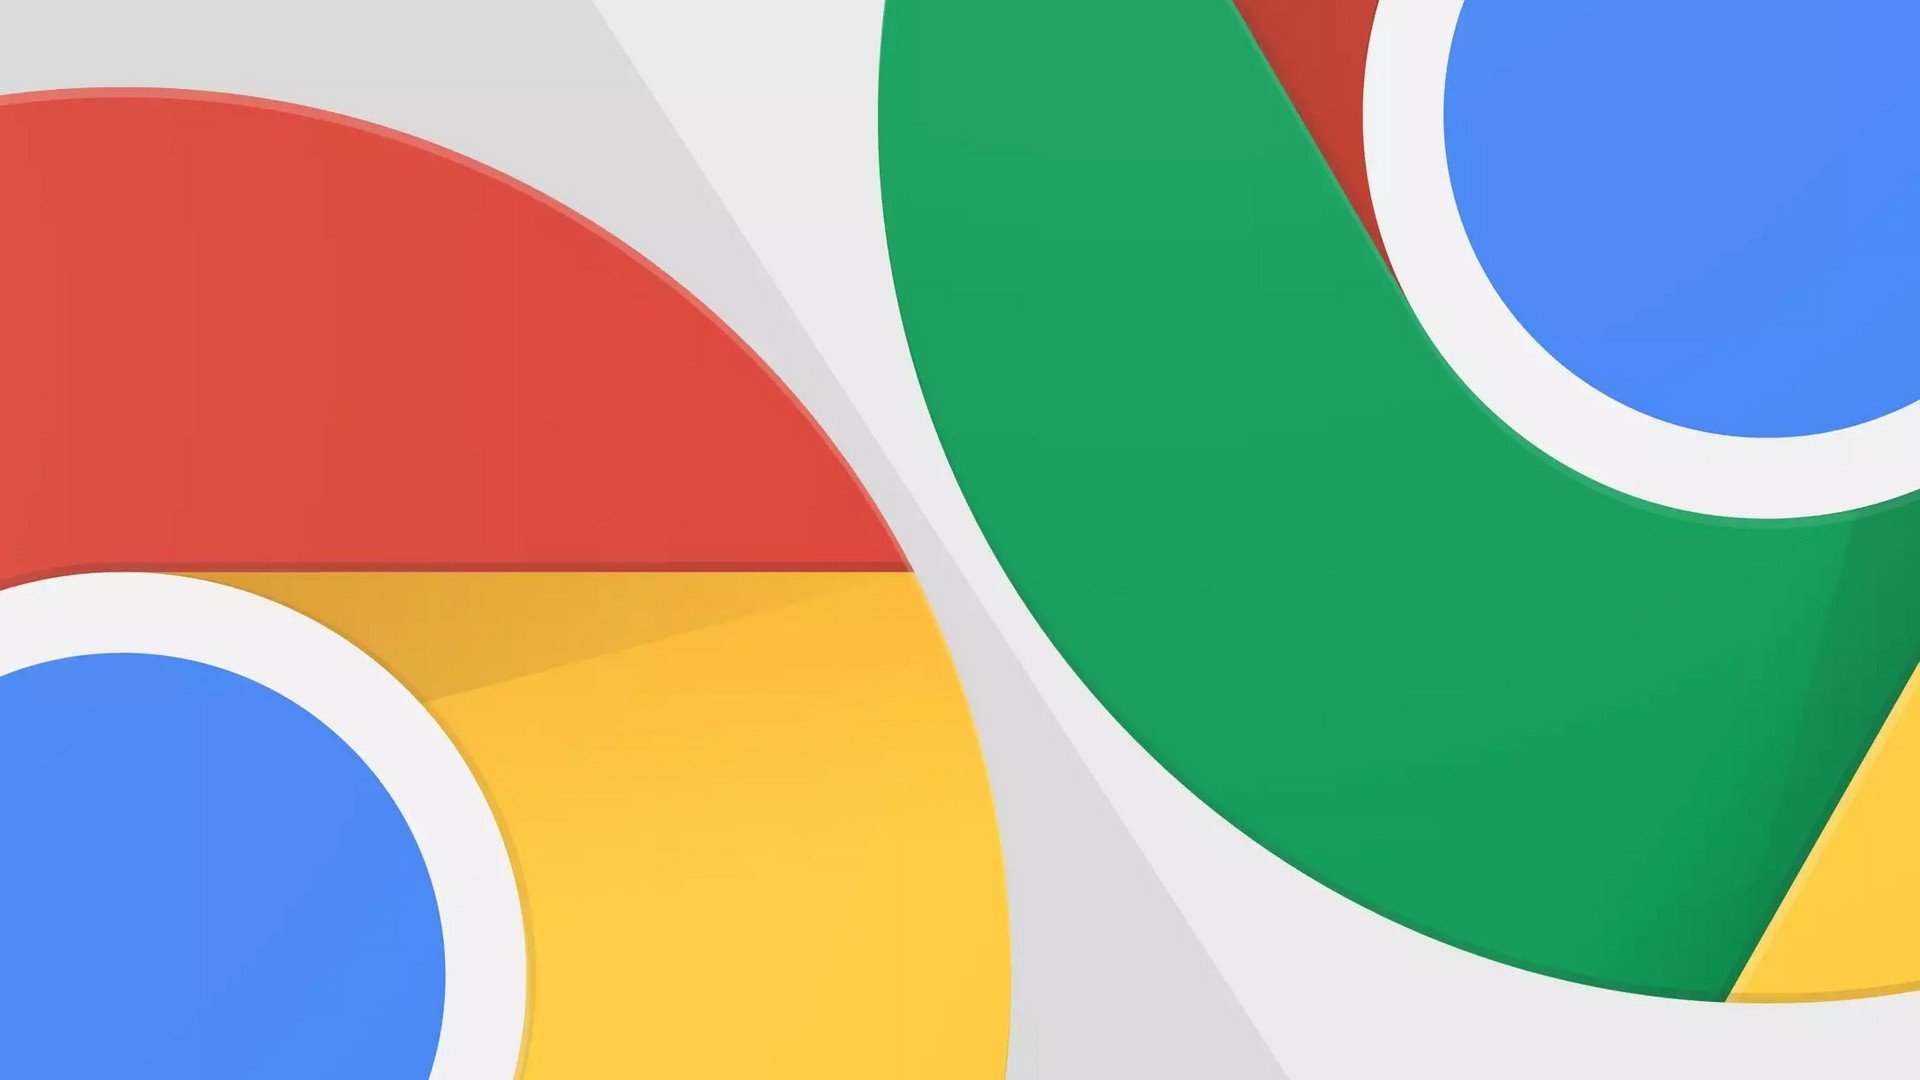 Google altera cone do Chrome depois de 8 anos sem mudanas